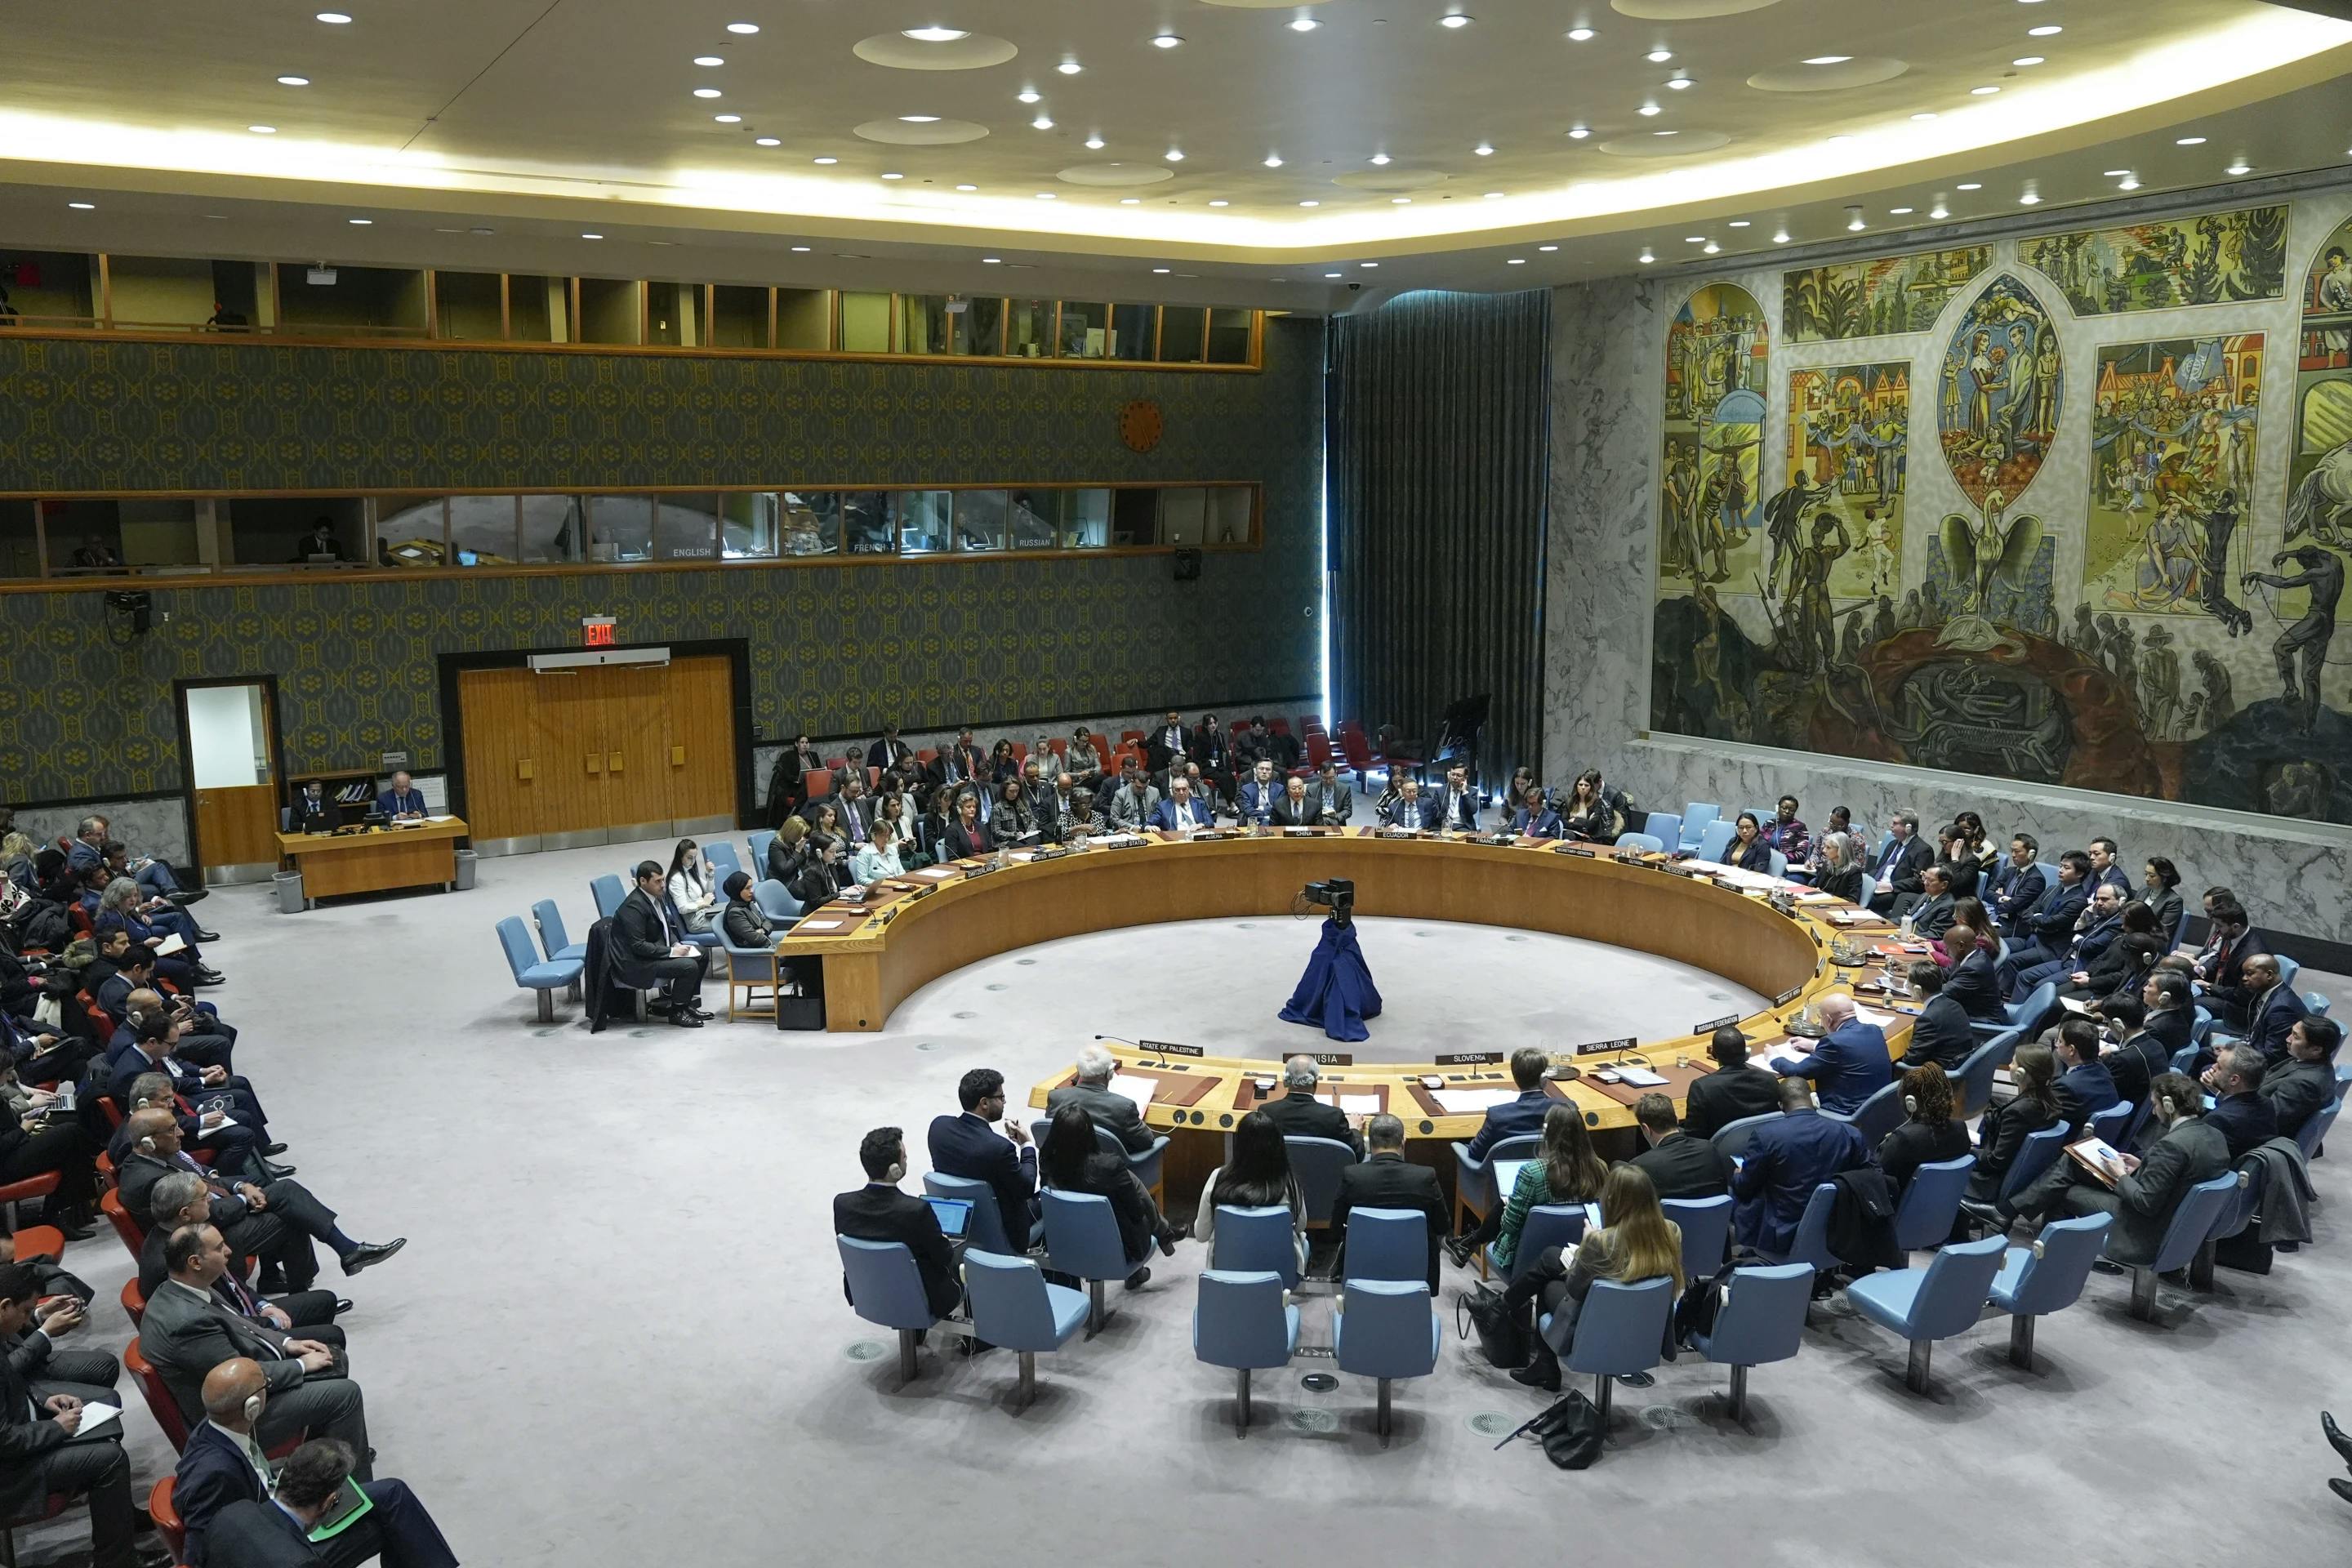 A UN Security Council meeting